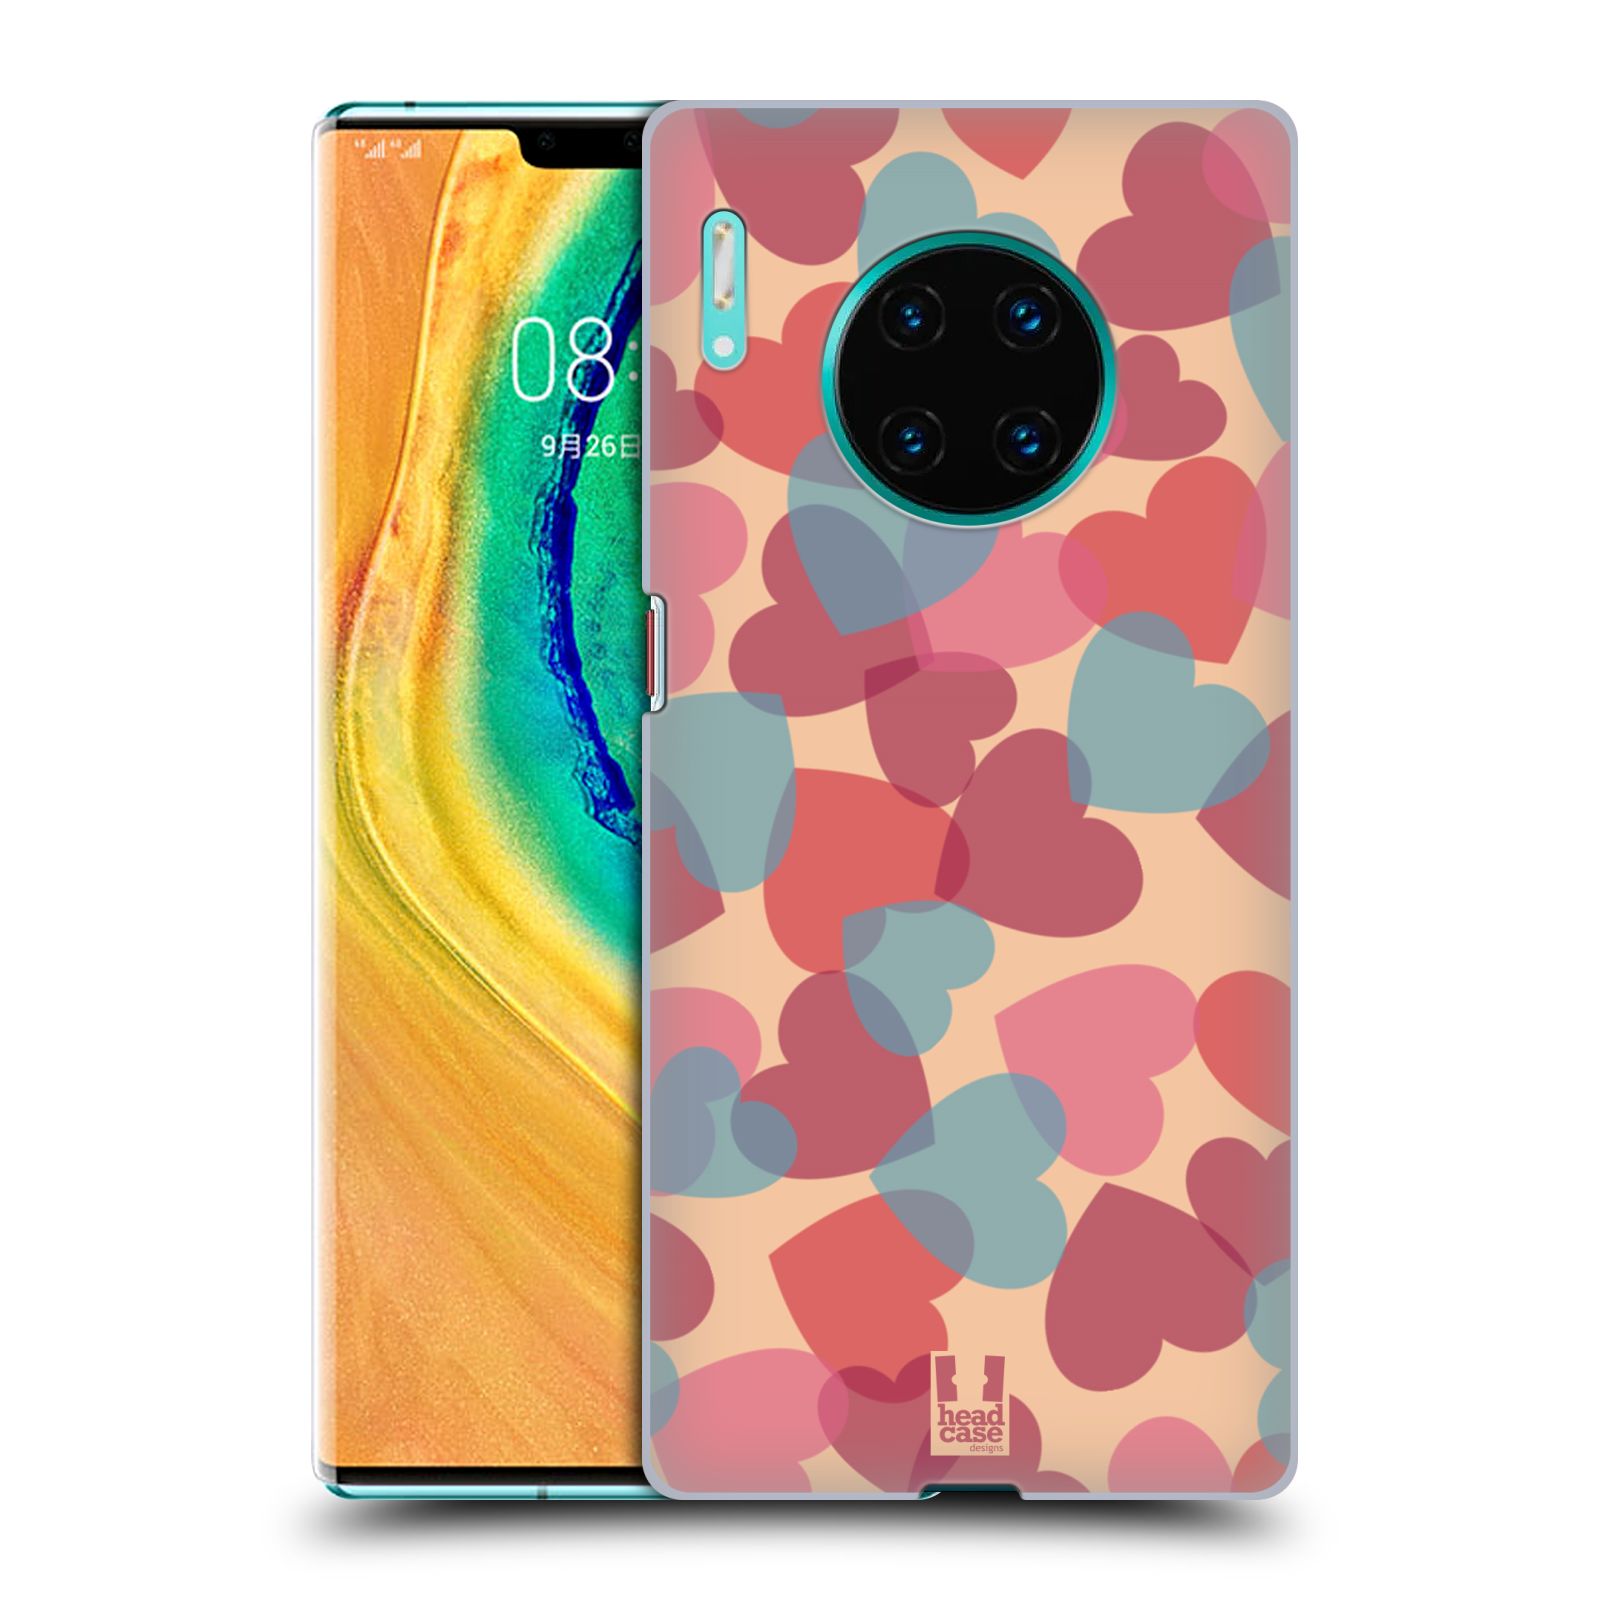 Zadní obal pro mobil Huawei Mate 30 PRO - HEAD CASE - Růžová srdíčka kreslený vzor